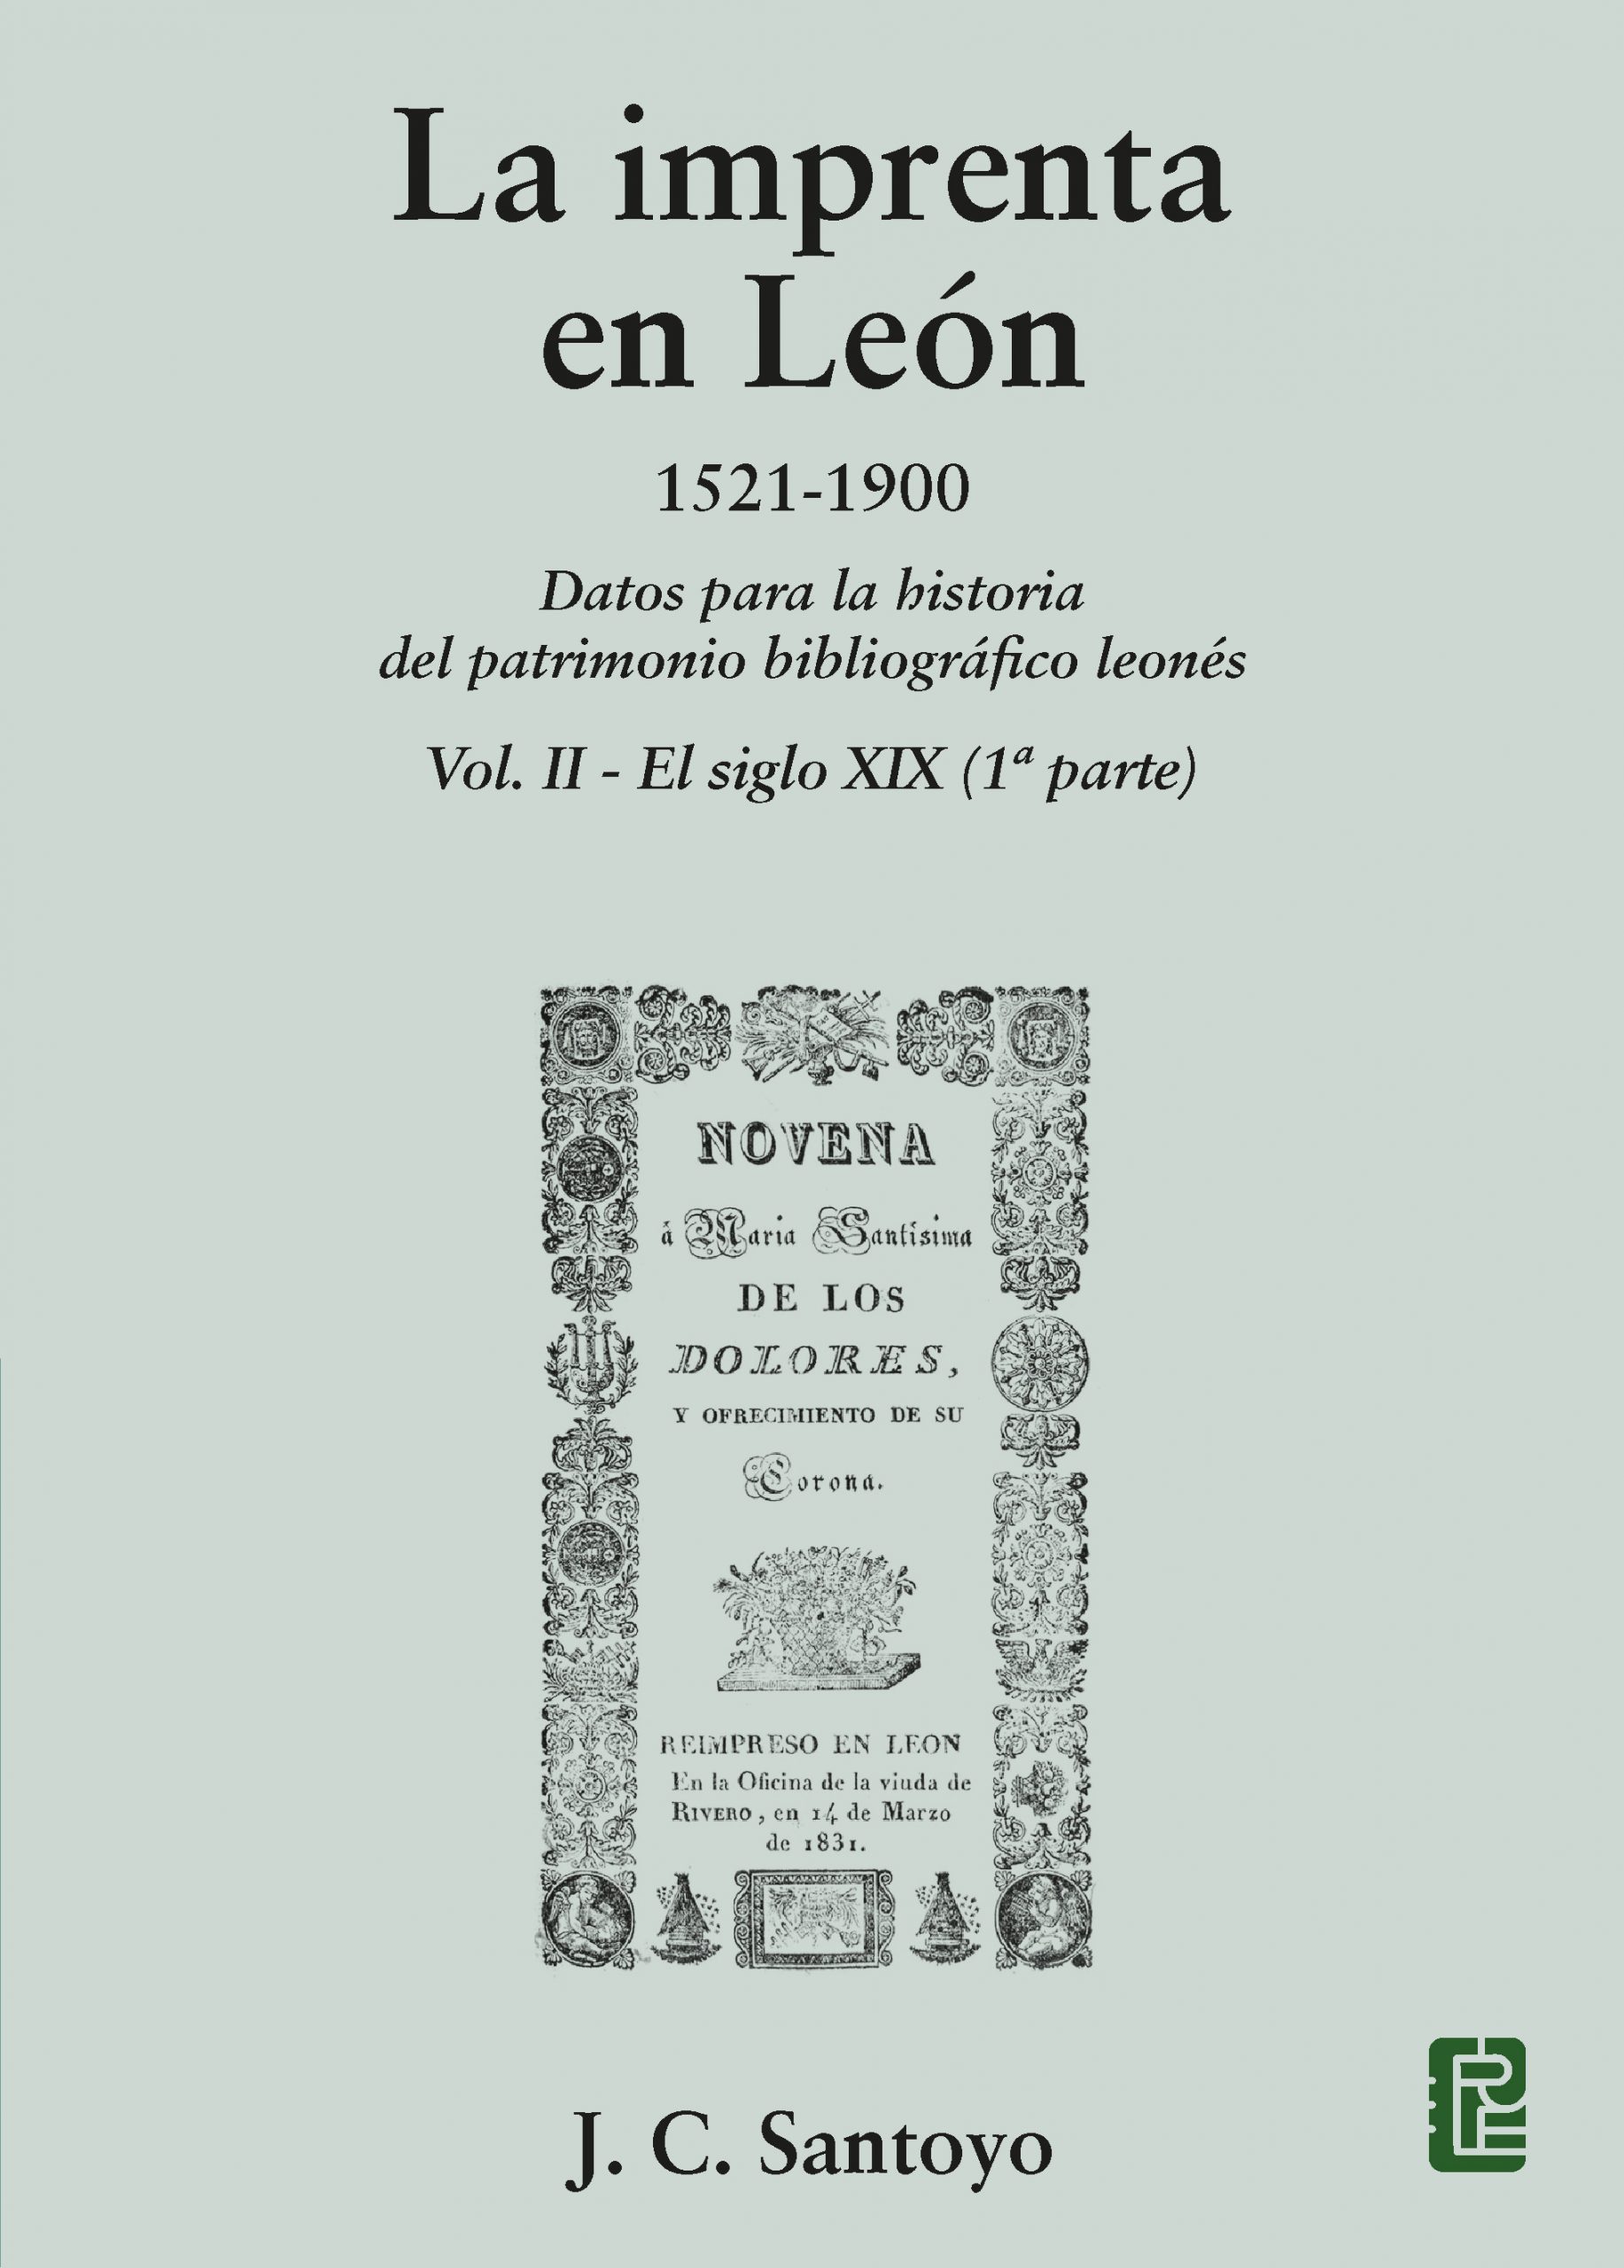 Imagen de portada del libro La imprenta en León 1521-1900